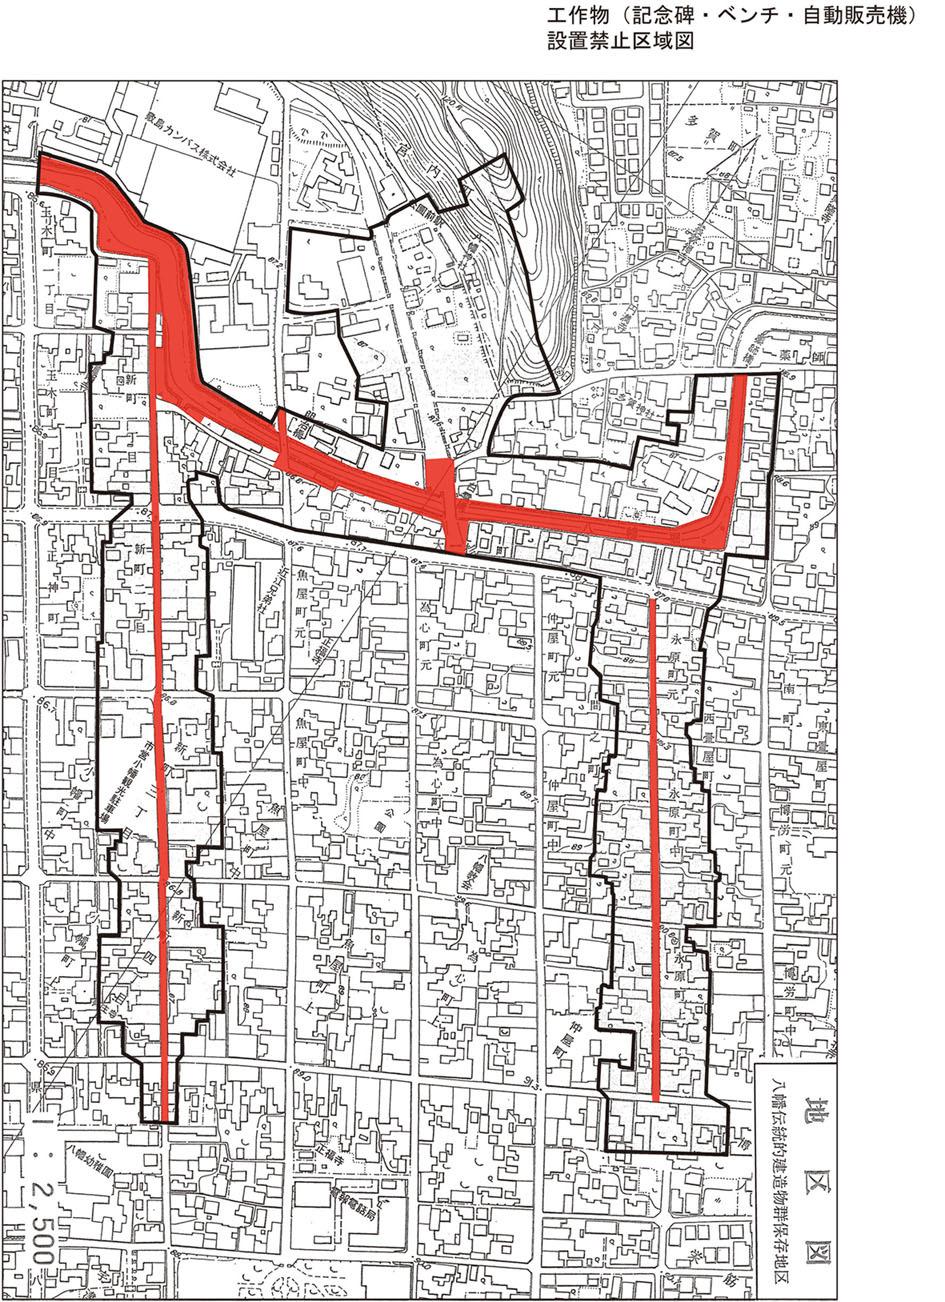 工作物(記念碑・ベンチ・自動販売機設置禁止区域図)黒枠線と赤い範囲図で示された白地図